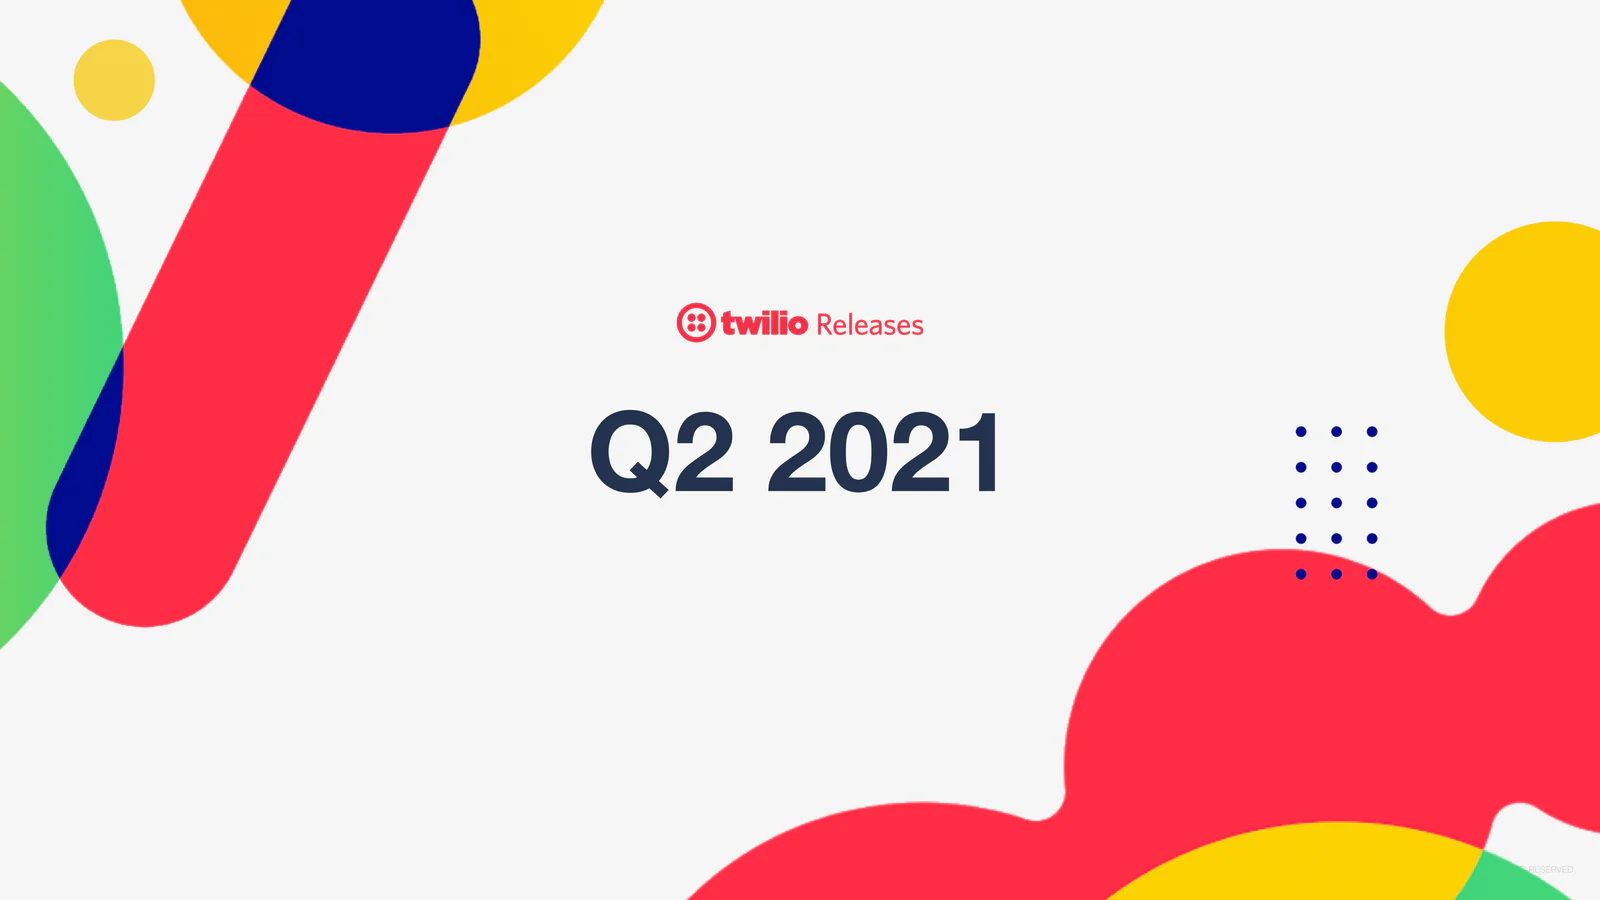 Twilio Releases Q2 2021 